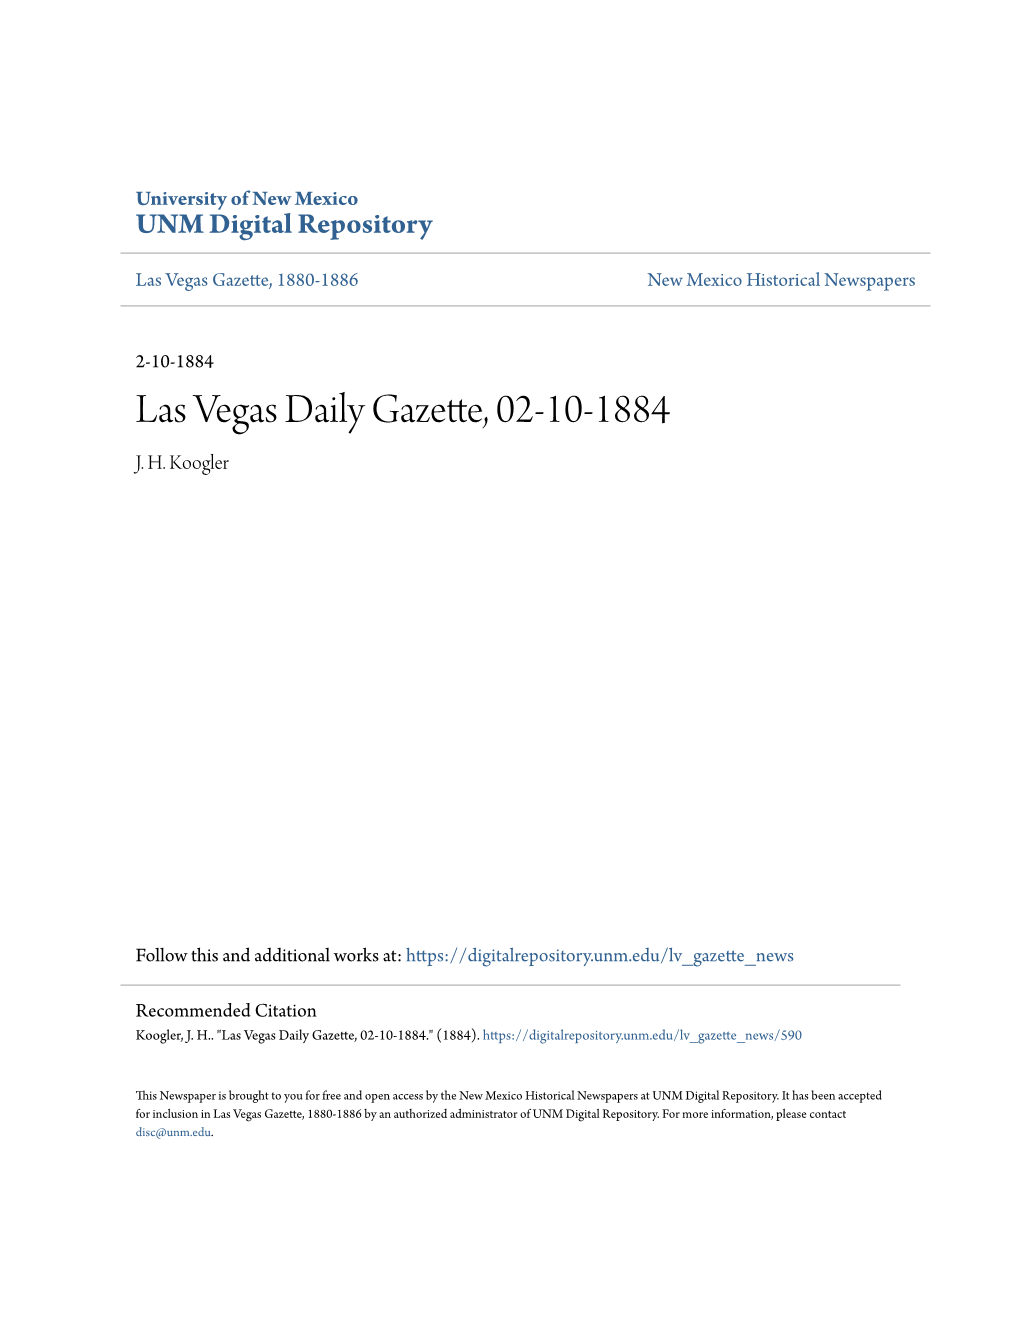 Las Vegas Daily Gazette, 02-10-1884 J